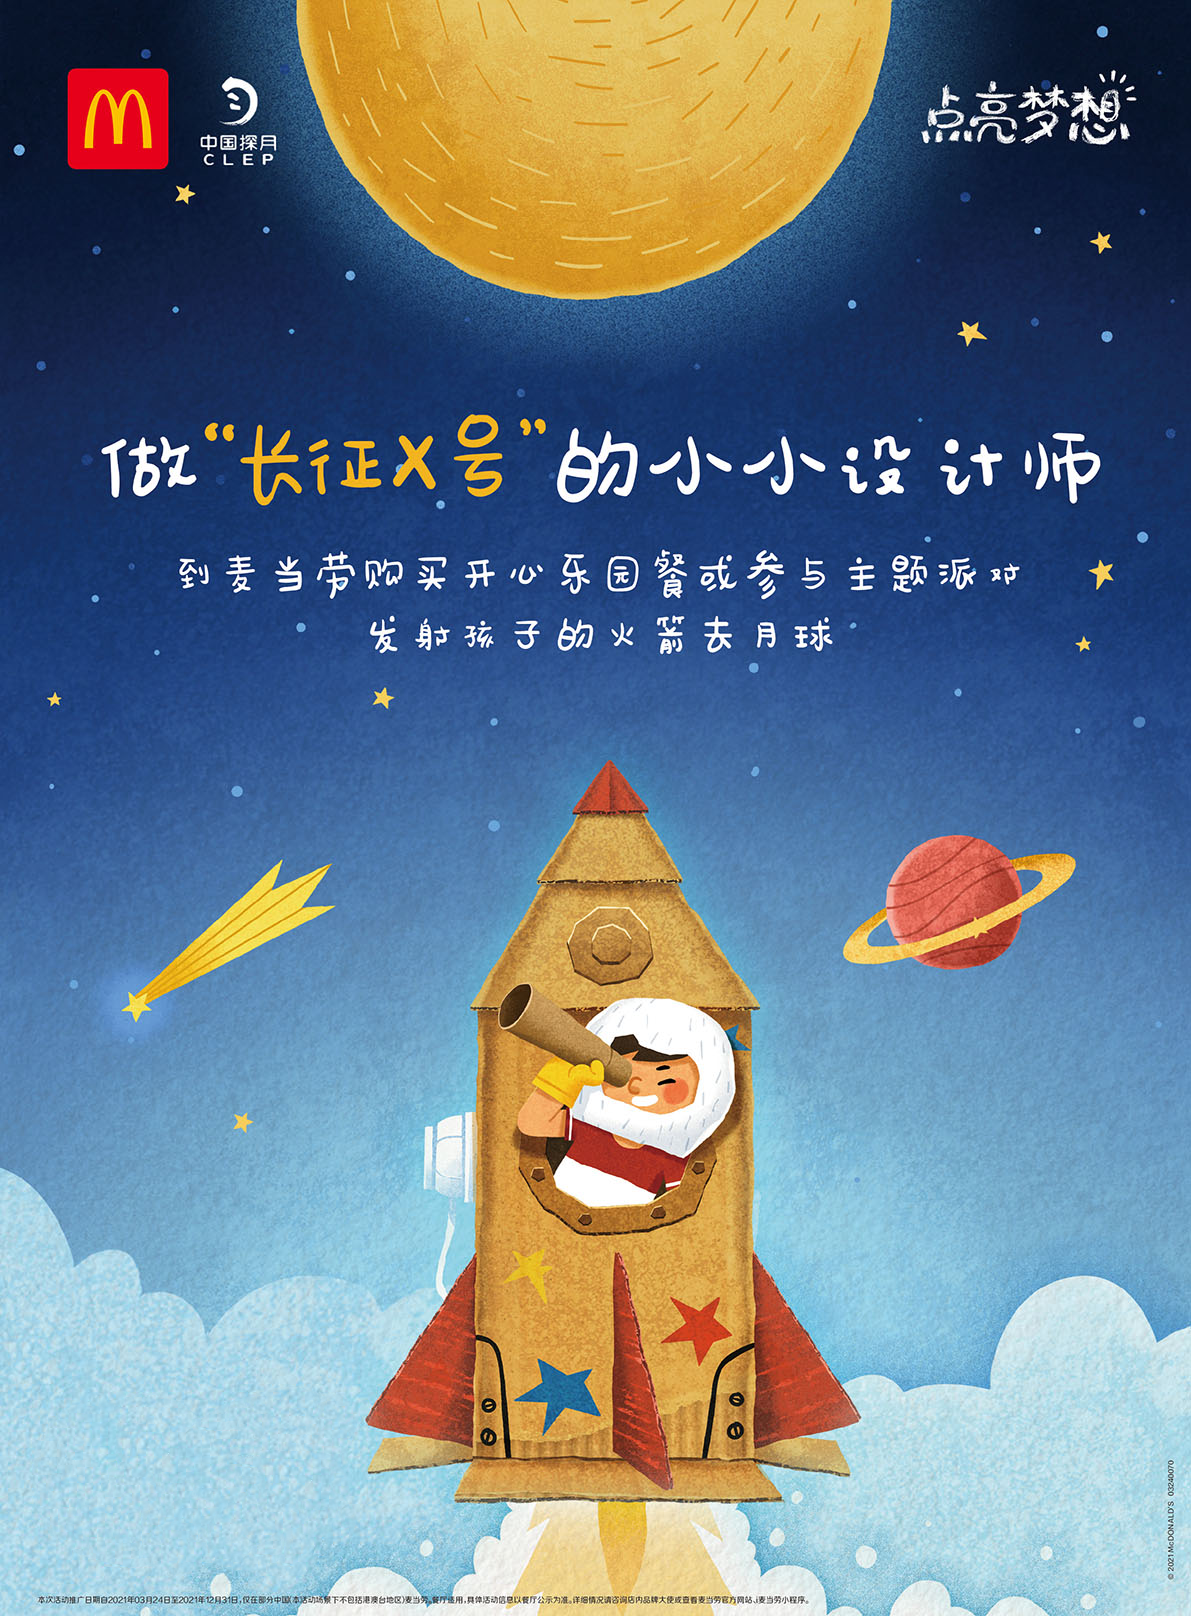 麦当劳联合中国探月联合招募“长征X号” 小小设计师用热爱点亮梦想，逐梦太空